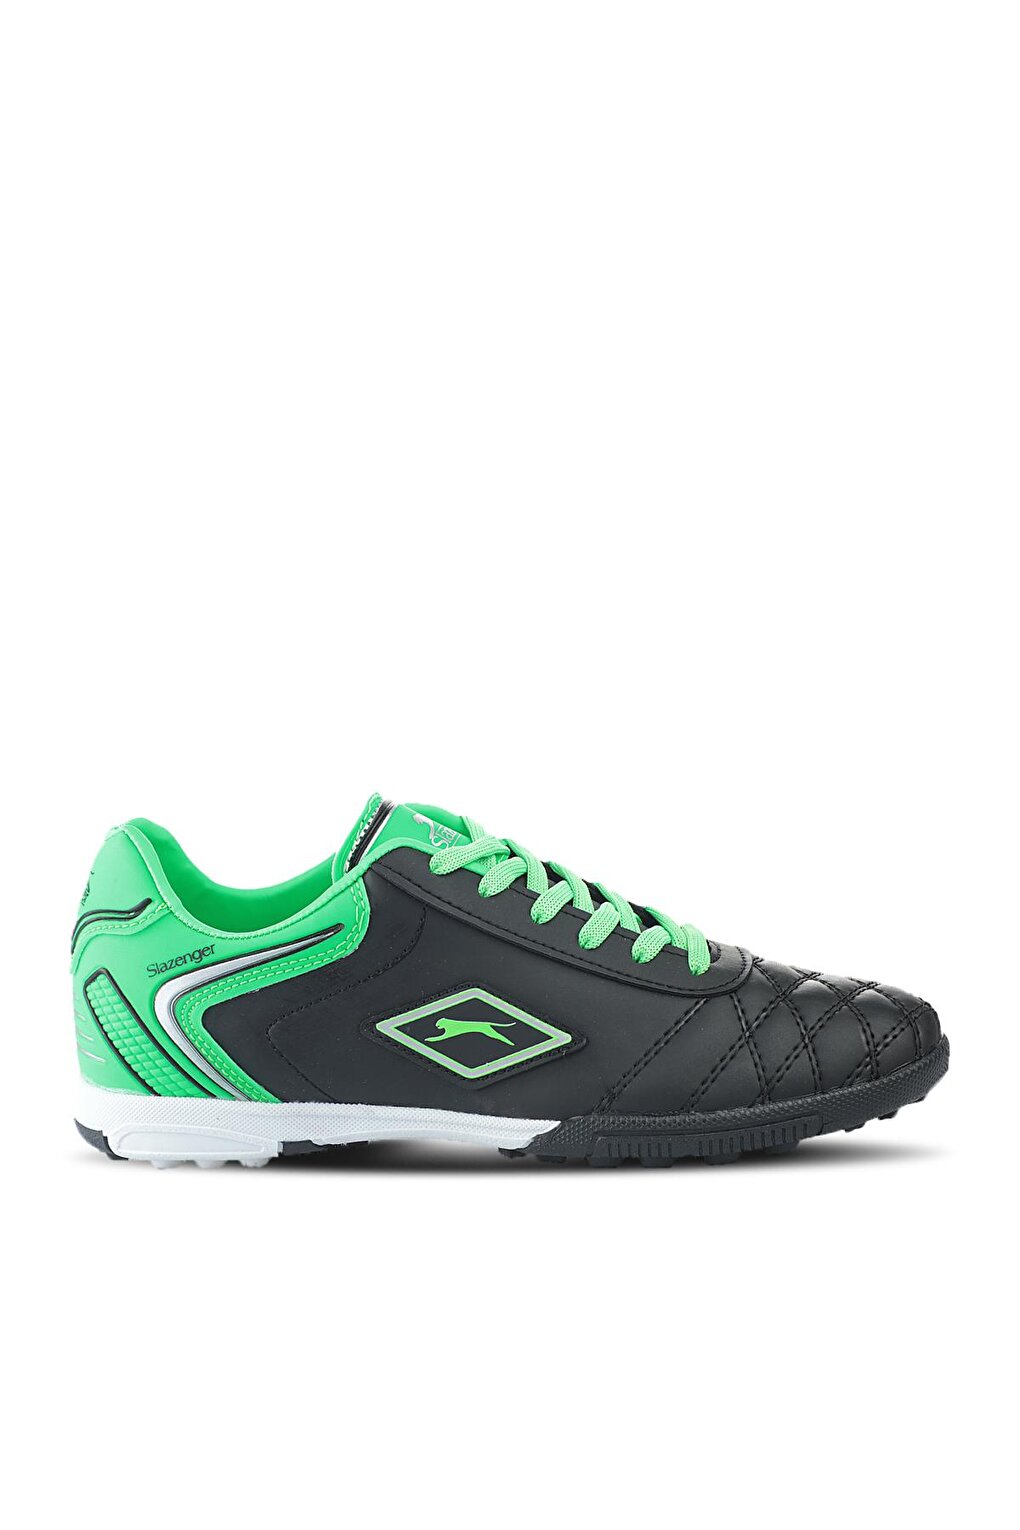 Футбольные кроссовки для мальчиков HUGO HS Astroturf, черные/зеленые SLAZENGER футбольные кроссовки для мальчиков hugo hs astroturf черные зеленые slazenger